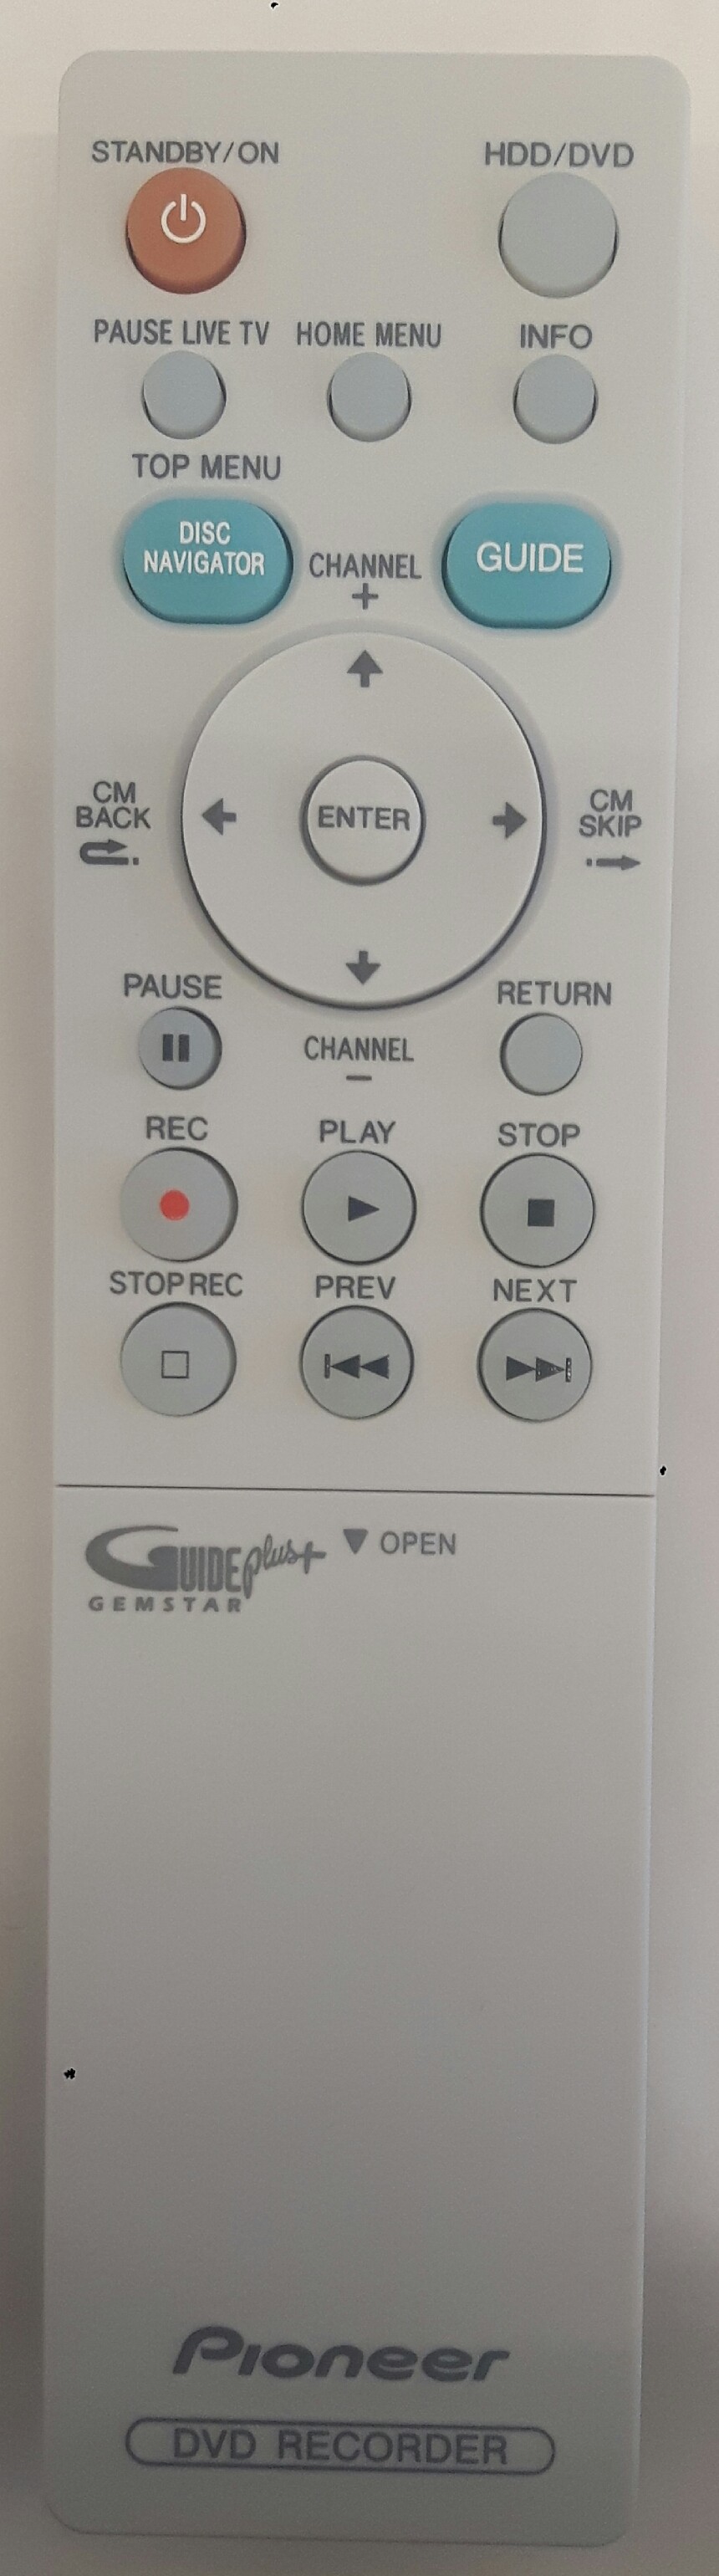 PIONEER DVRLX60D Remote Control Original